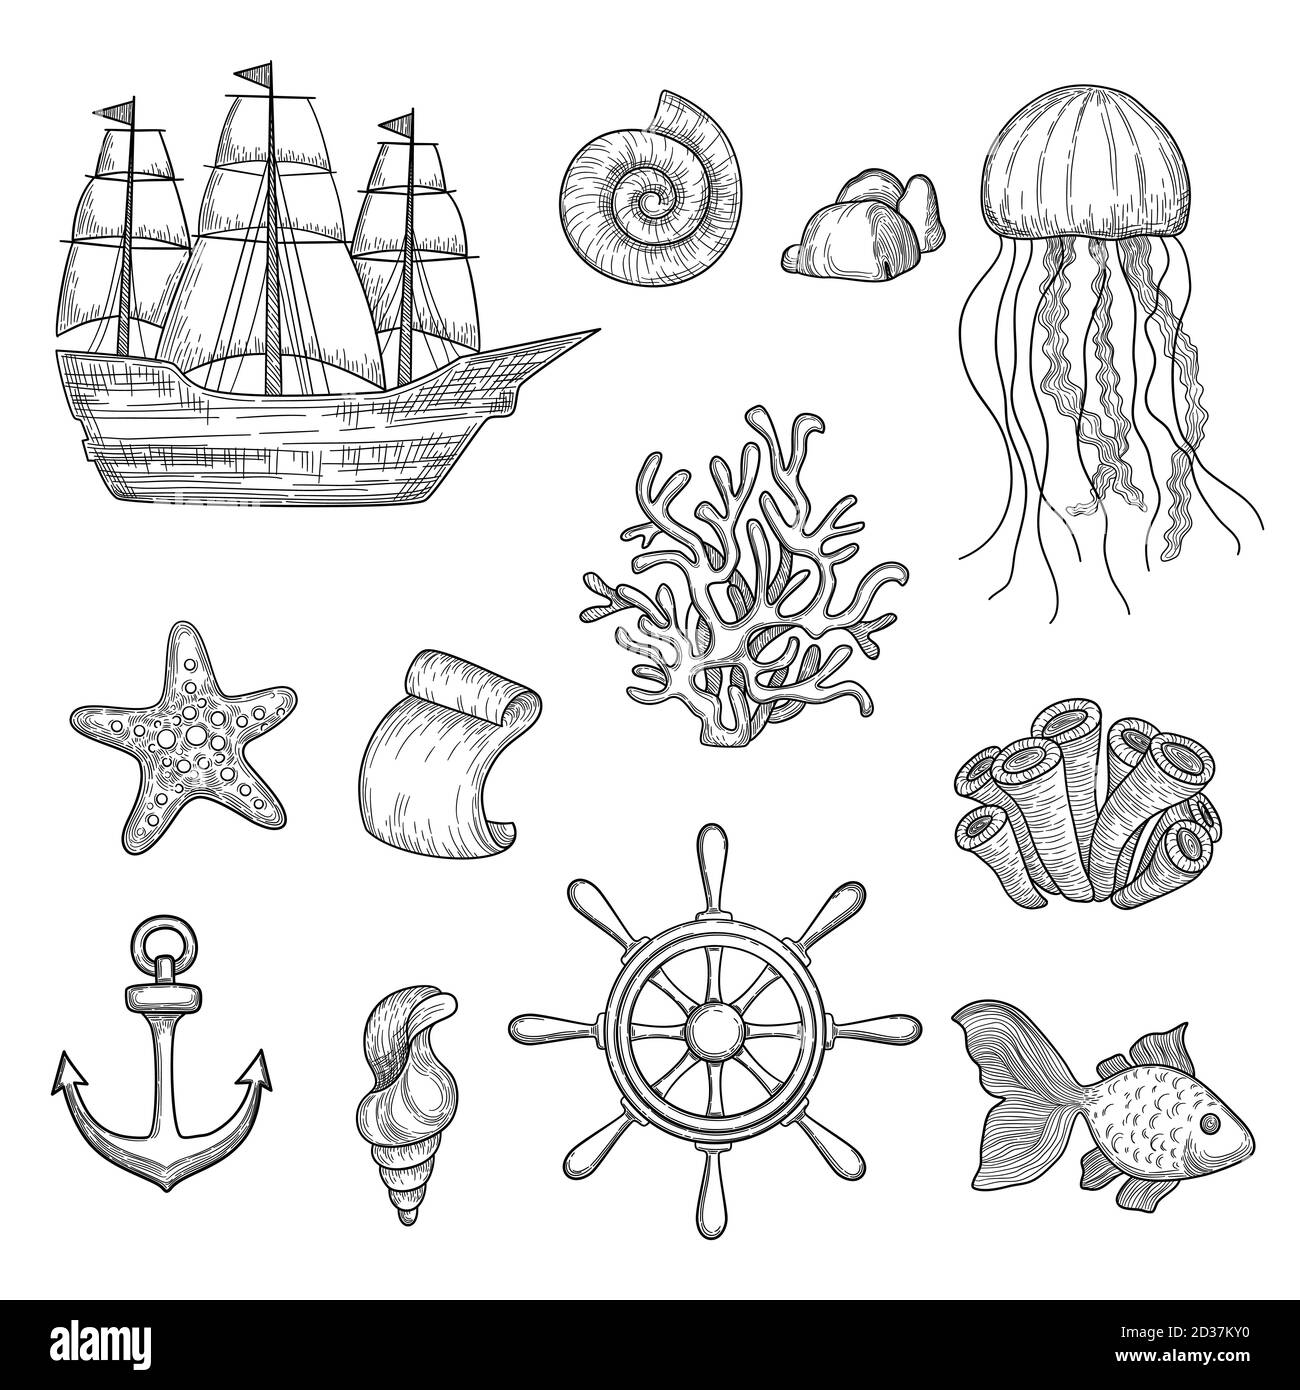 Nautische Elemente. Ozean Fisch Muscheln Boote Schiffe Knoten Reise marine Symbole Vektor Hand gezeichnet Sammlung Stock Vektor